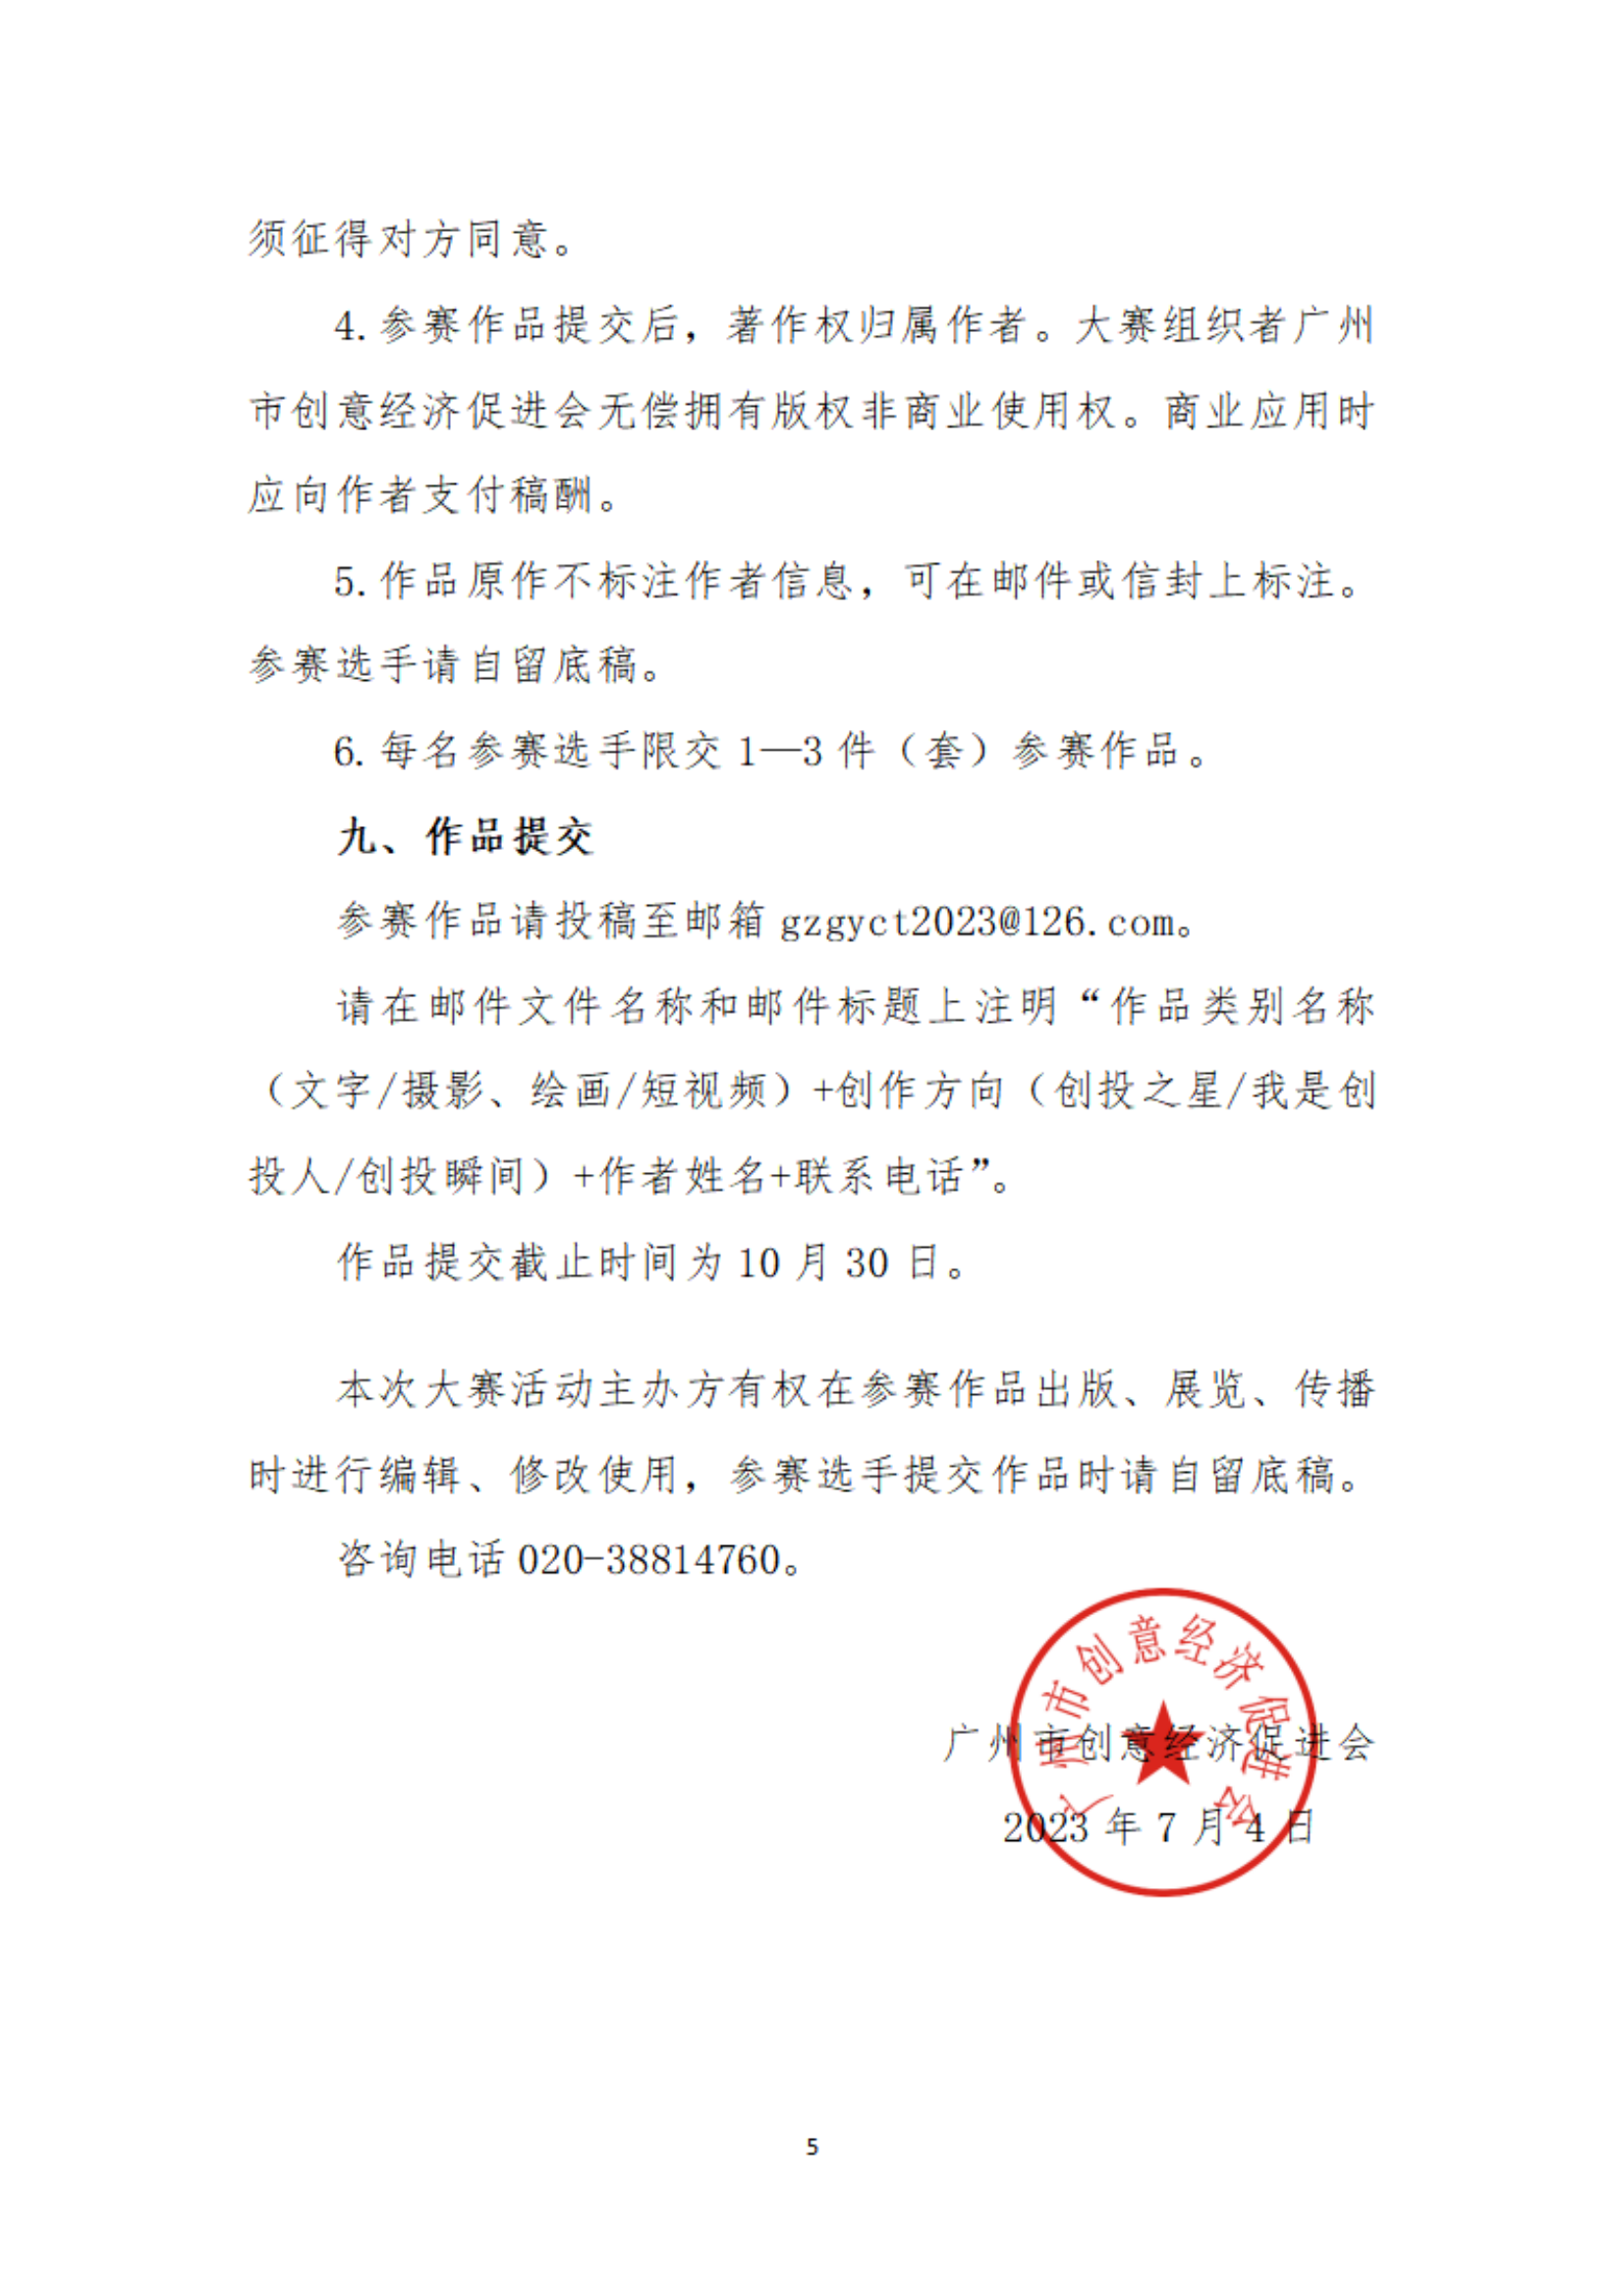 【以此為(wèi)准】关于举办广州市社会组织公益创投活动“公益创投 暖席广州”主题征文(wén)和摄影、短视频大赛的通知_04.png